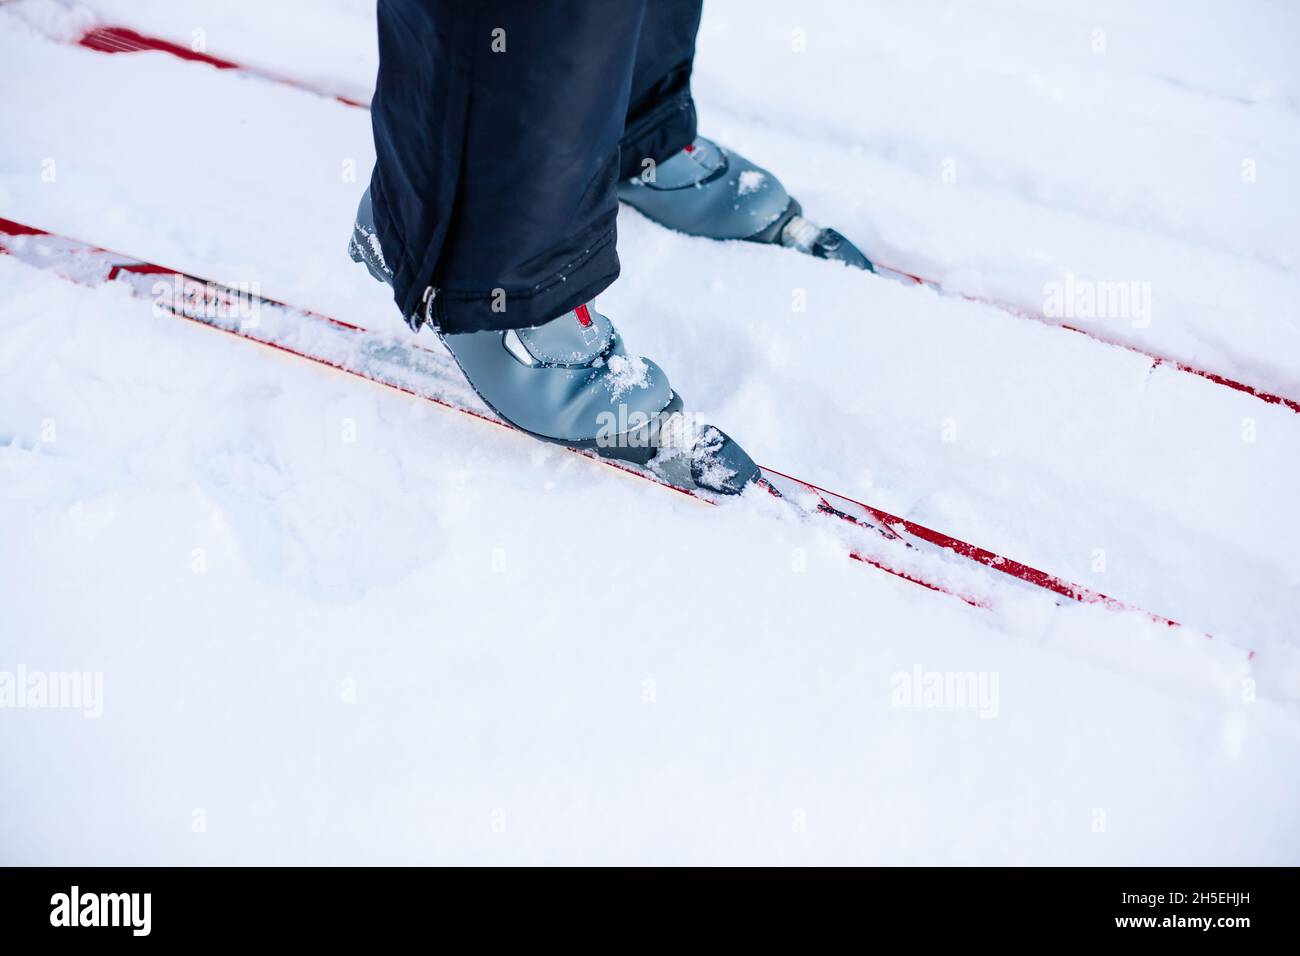 Gros plan sur les skis et les supports de ski.L'homme skine sur la neige d'hiver par beau temps Banque D'Images